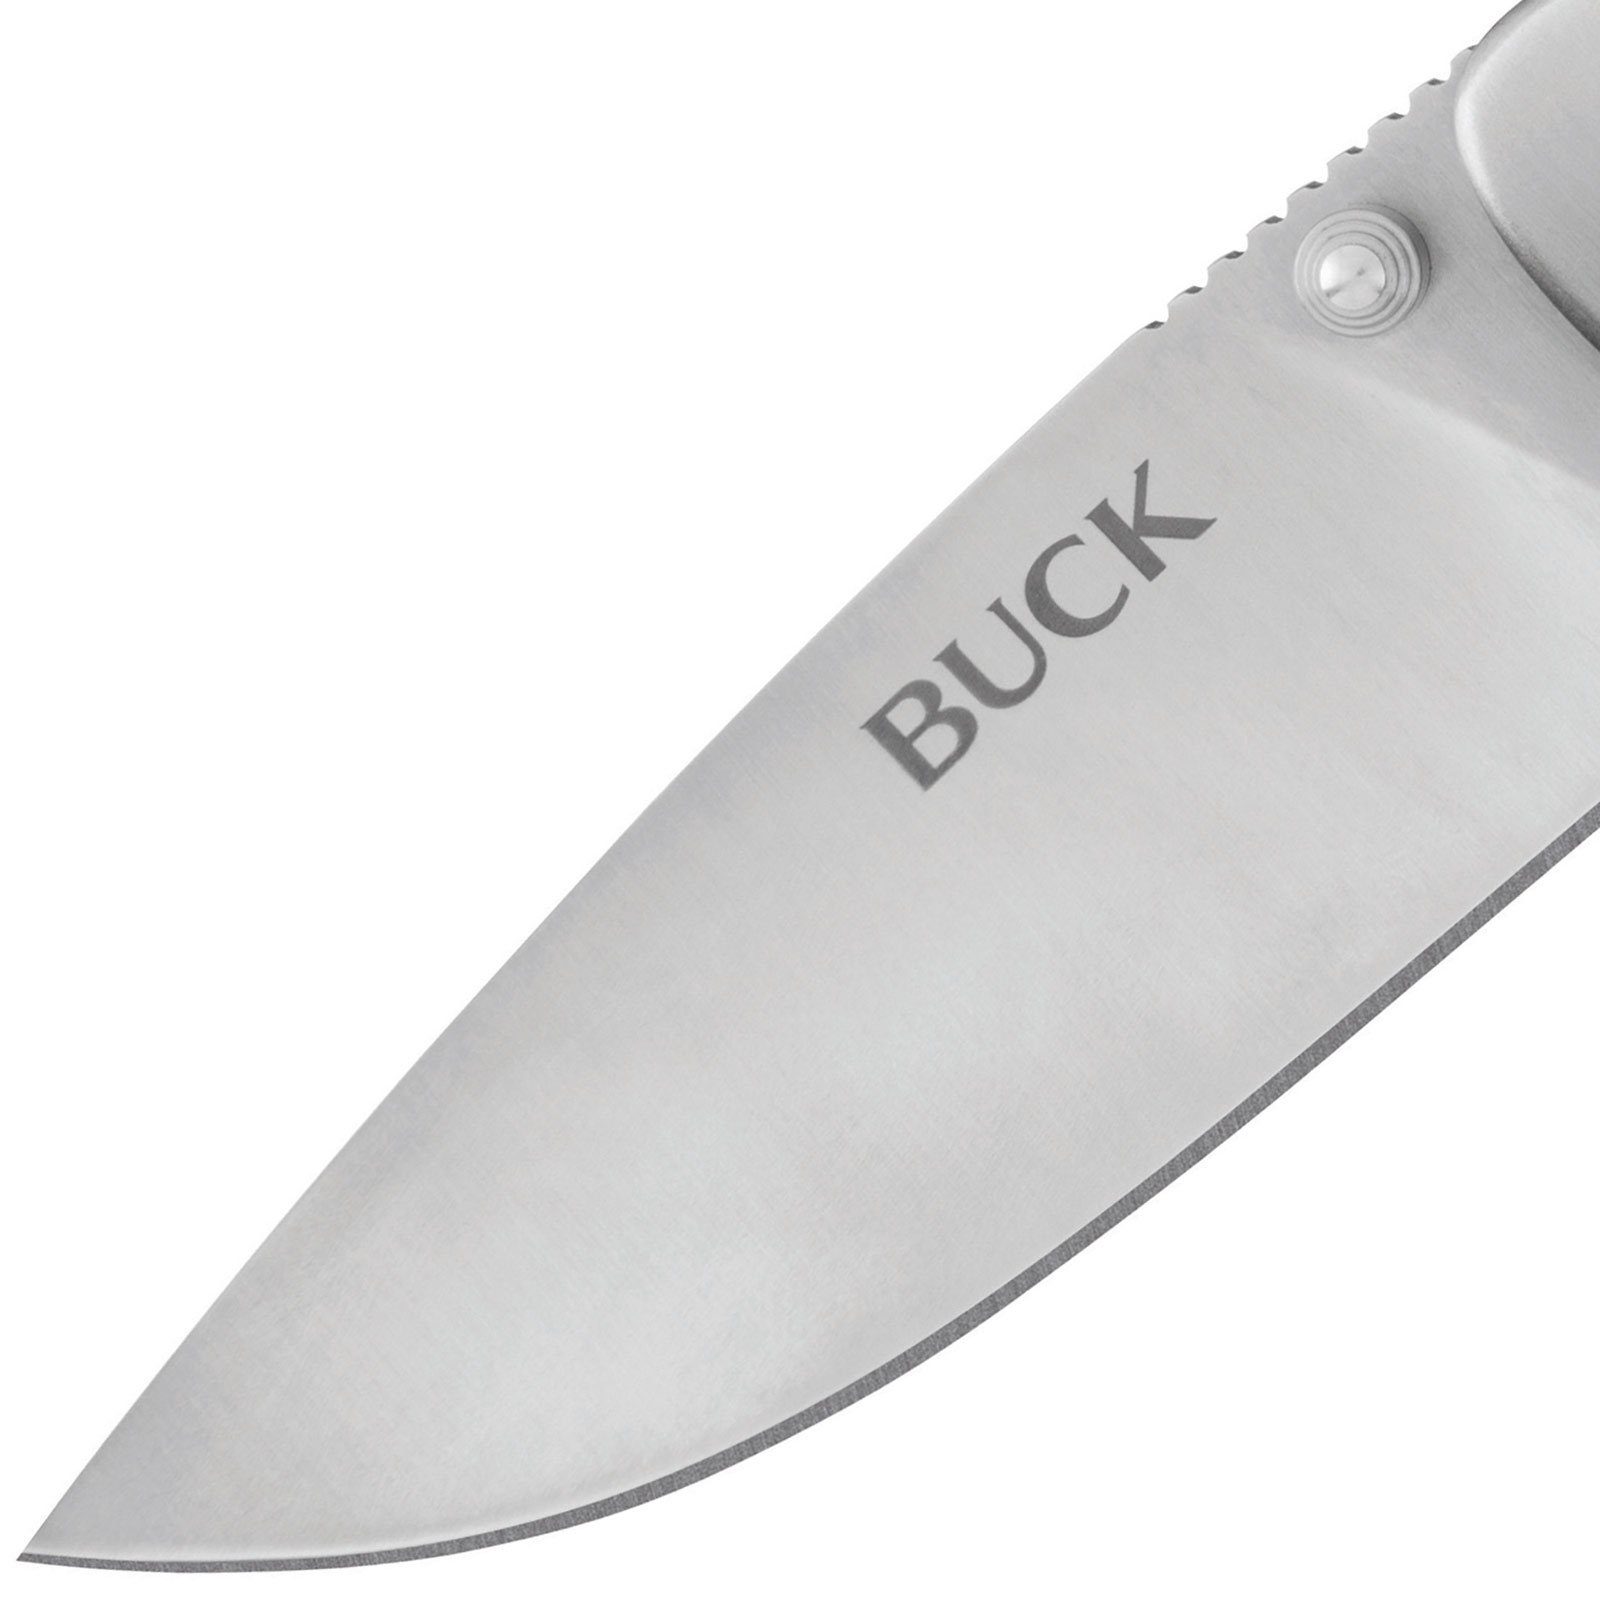 Buck Knives Einhandmesser Large Messer, Taschenmesser Klappmesser Selkirk Taschenmesser Groß Survival